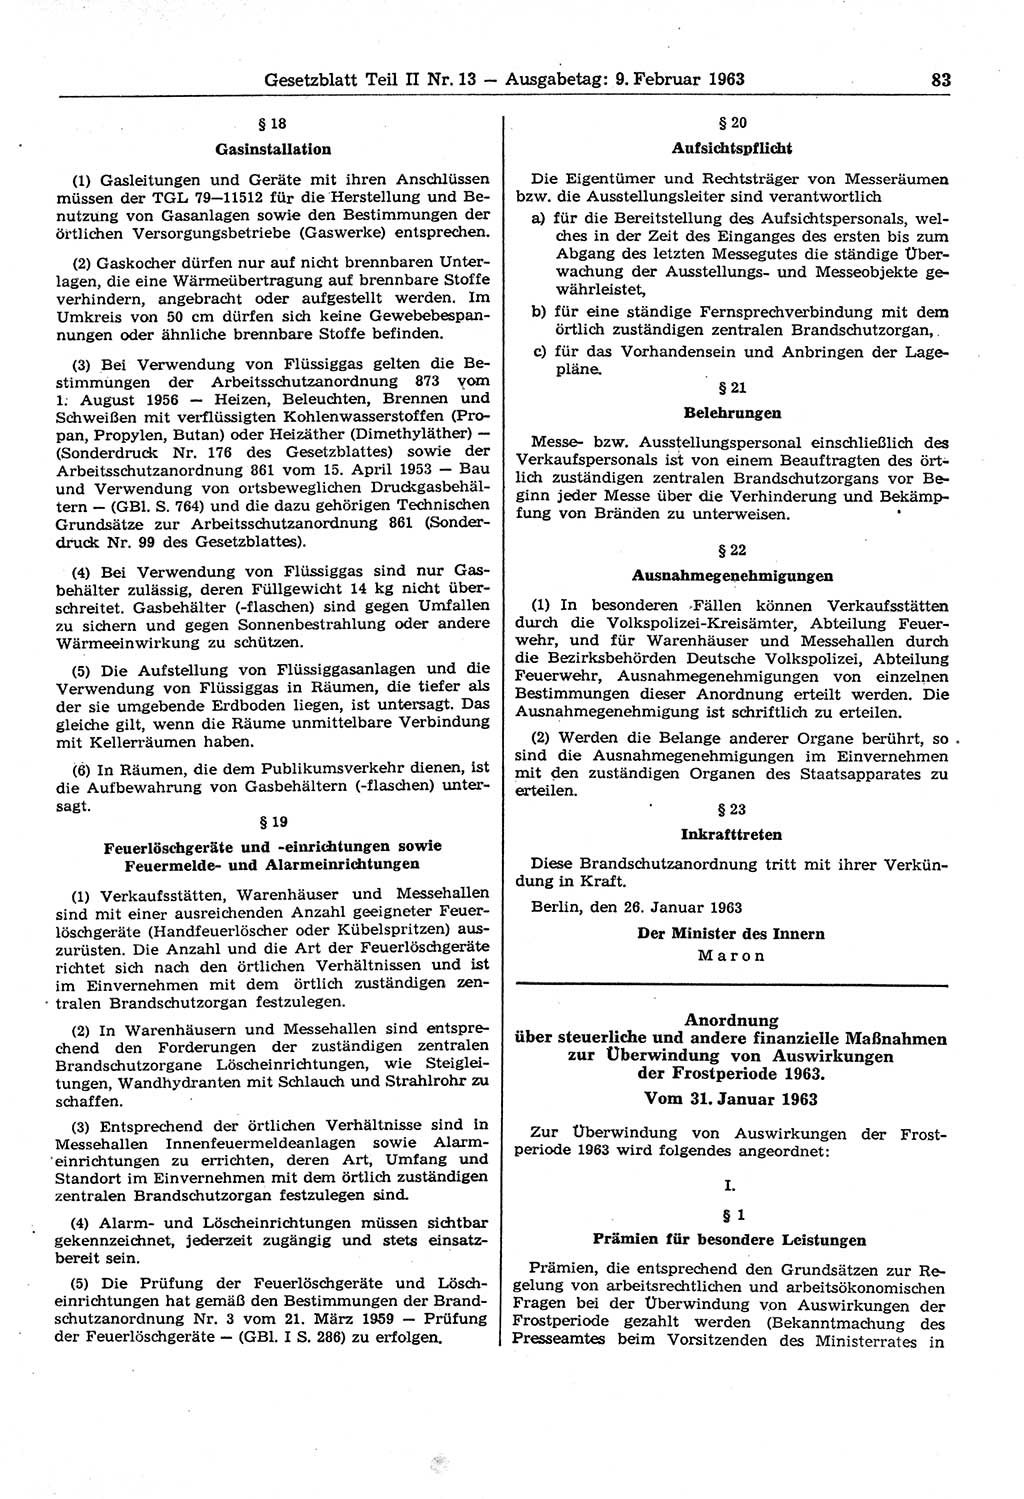 Gesetzblatt (GBl.) der Deutschen Demokratischen Republik (DDR) Teil ⅠⅠ 1963, Seite 83 (GBl. DDR ⅠⅠ 1963, S. 83)